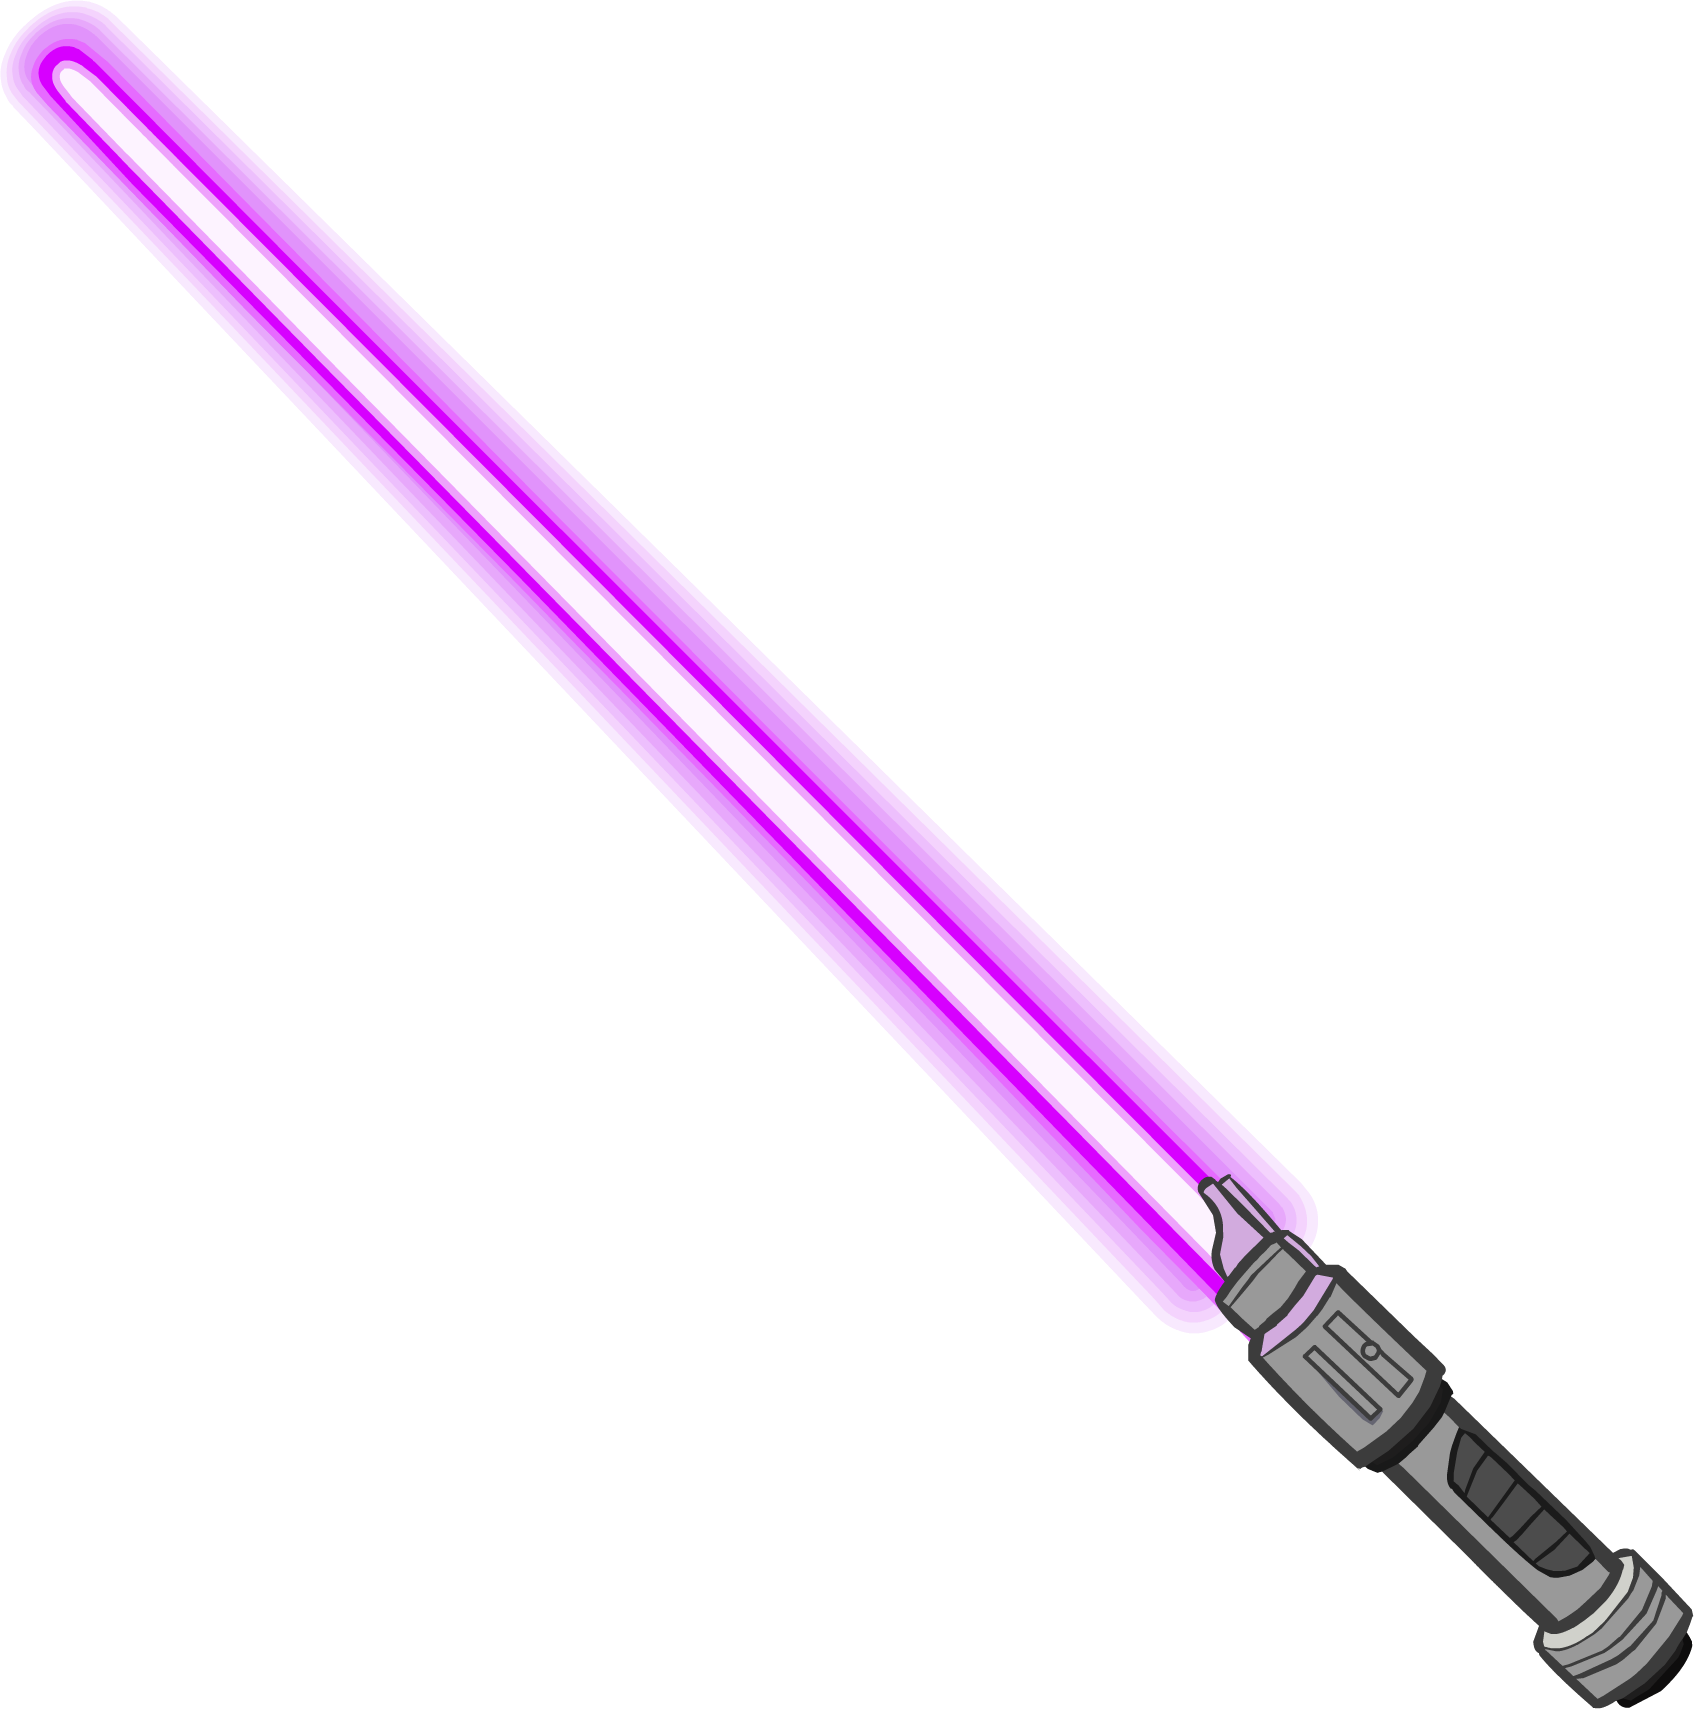 Starwars sword